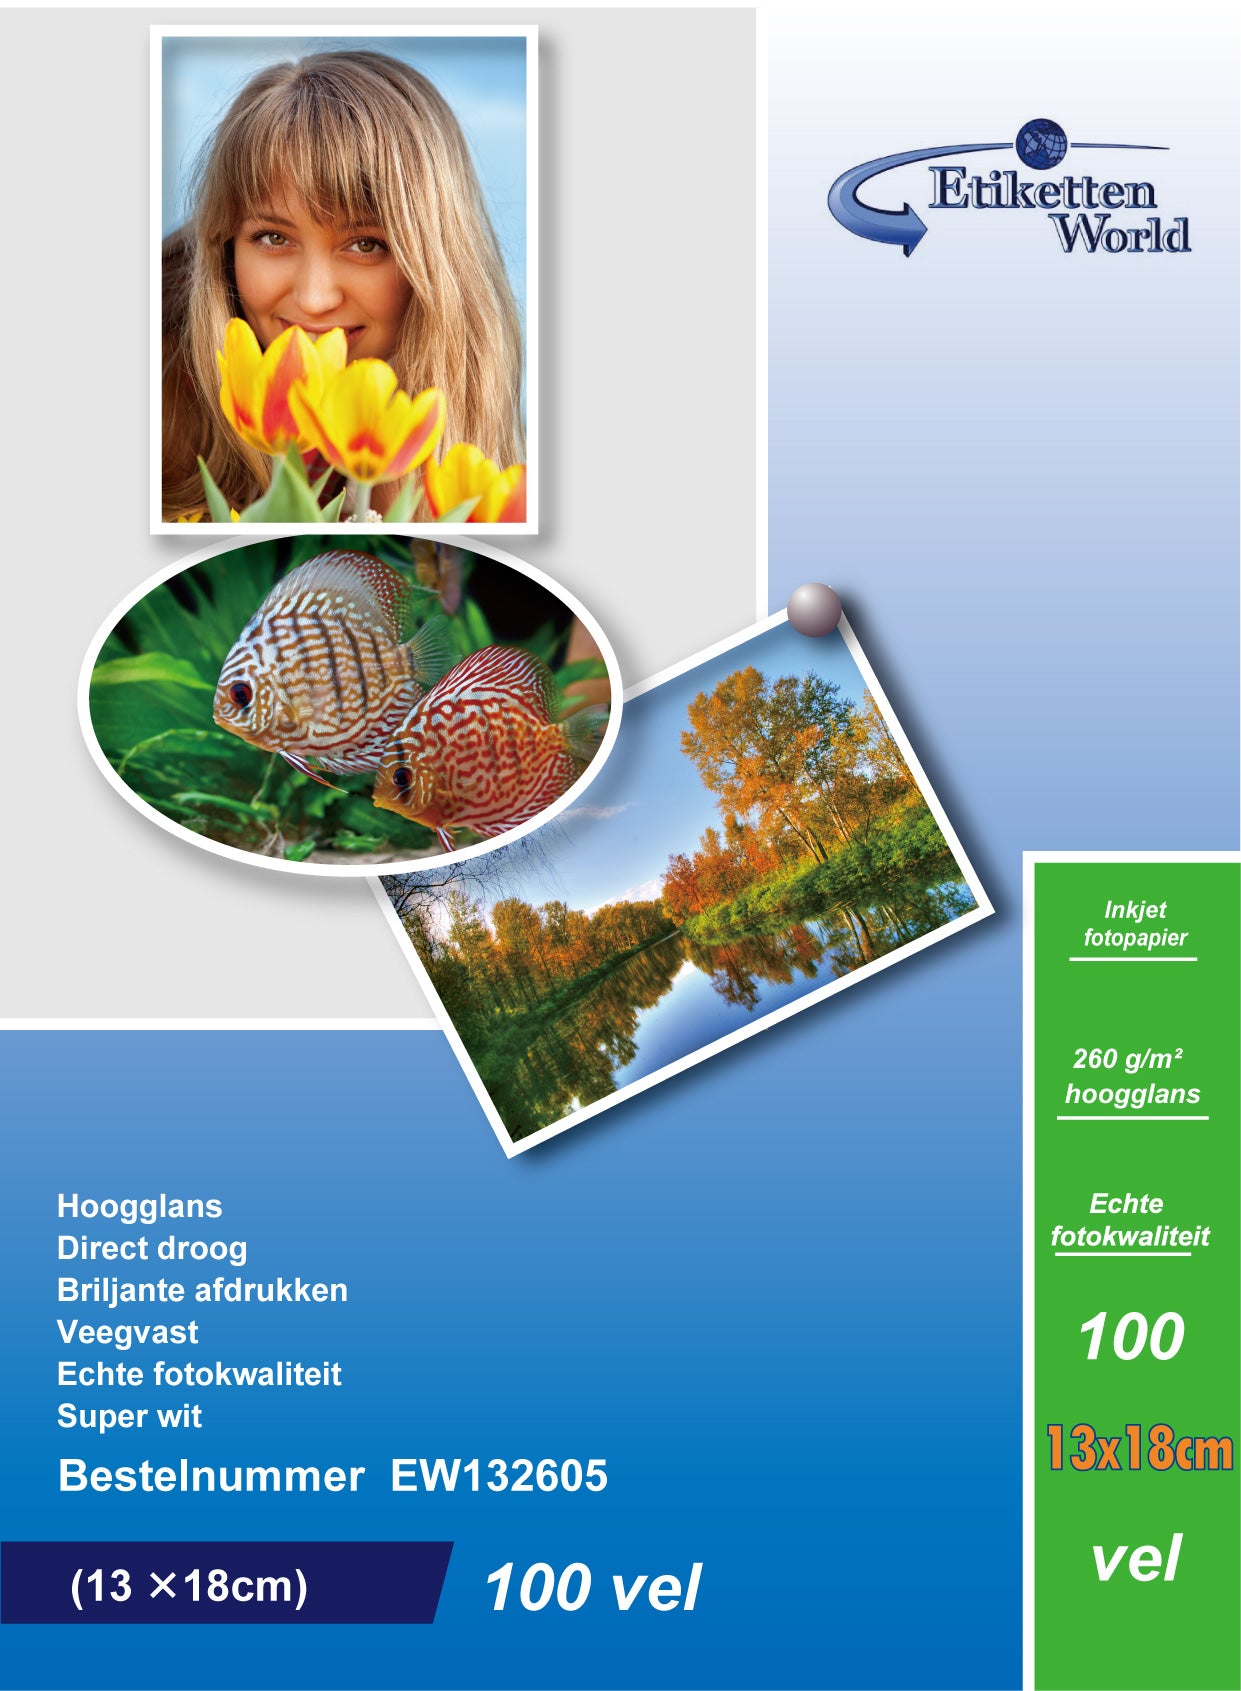 100 Blatt EtikettenWorld BV Fotopapier/ Fotokarten  13x18 cm 260g/qm High Glossy und wasserfest